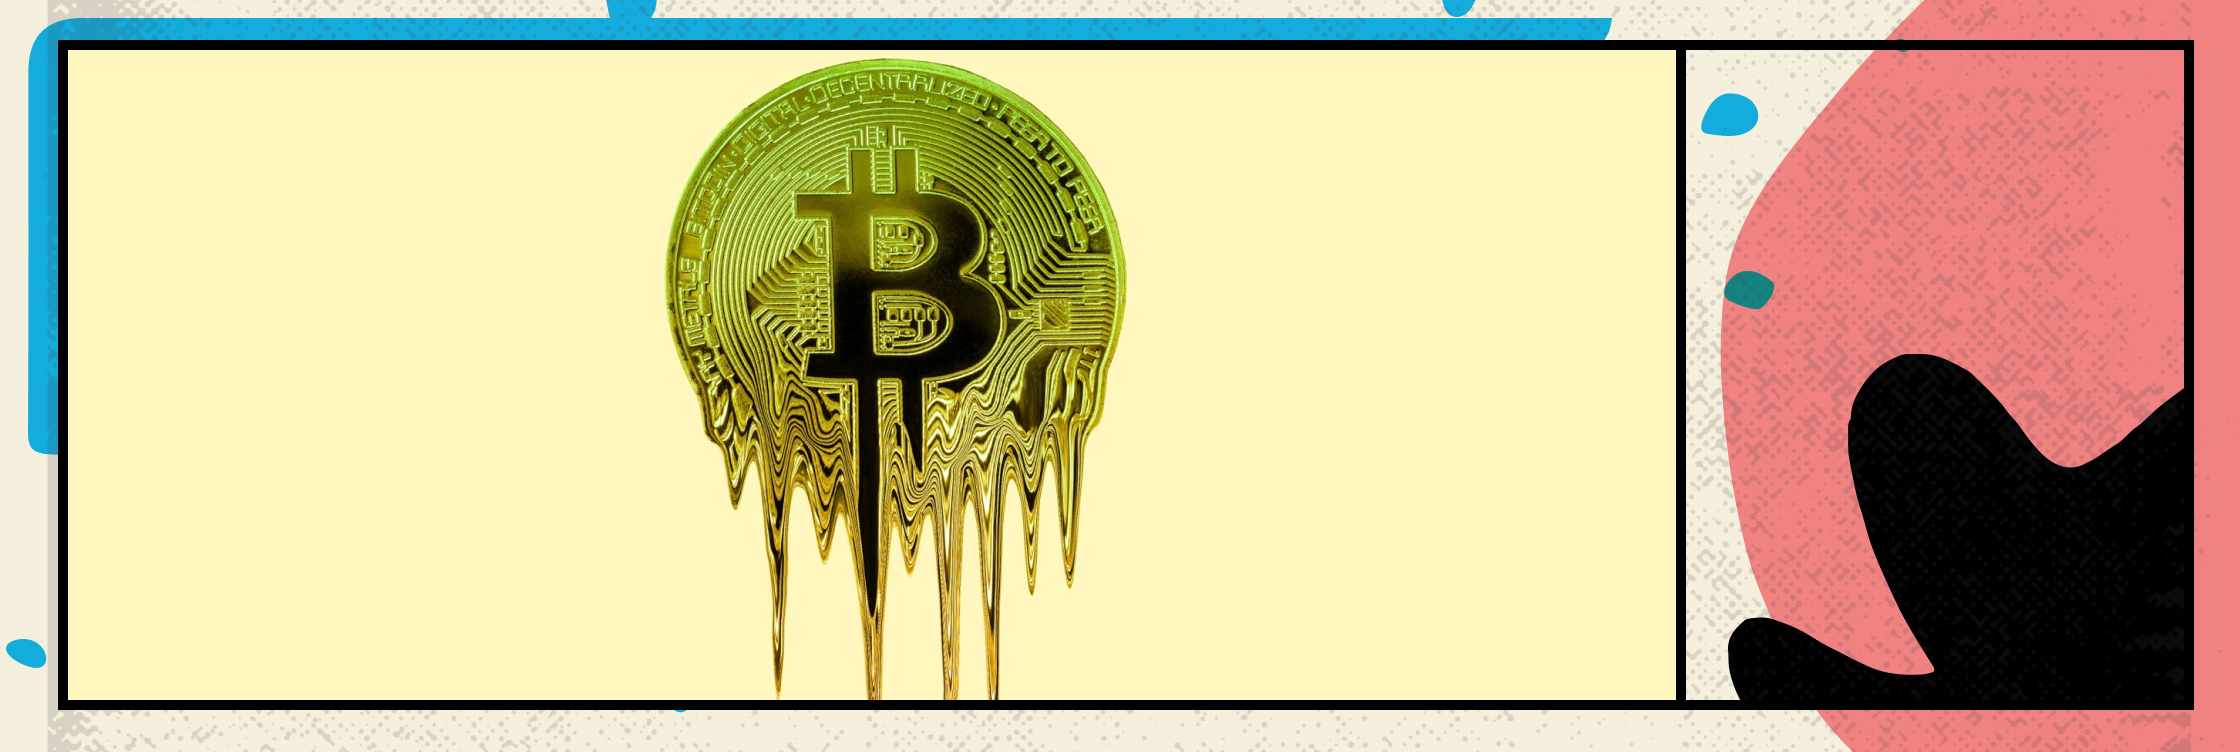 El bitcoin ha caído a su nivel más bajo en seis meses